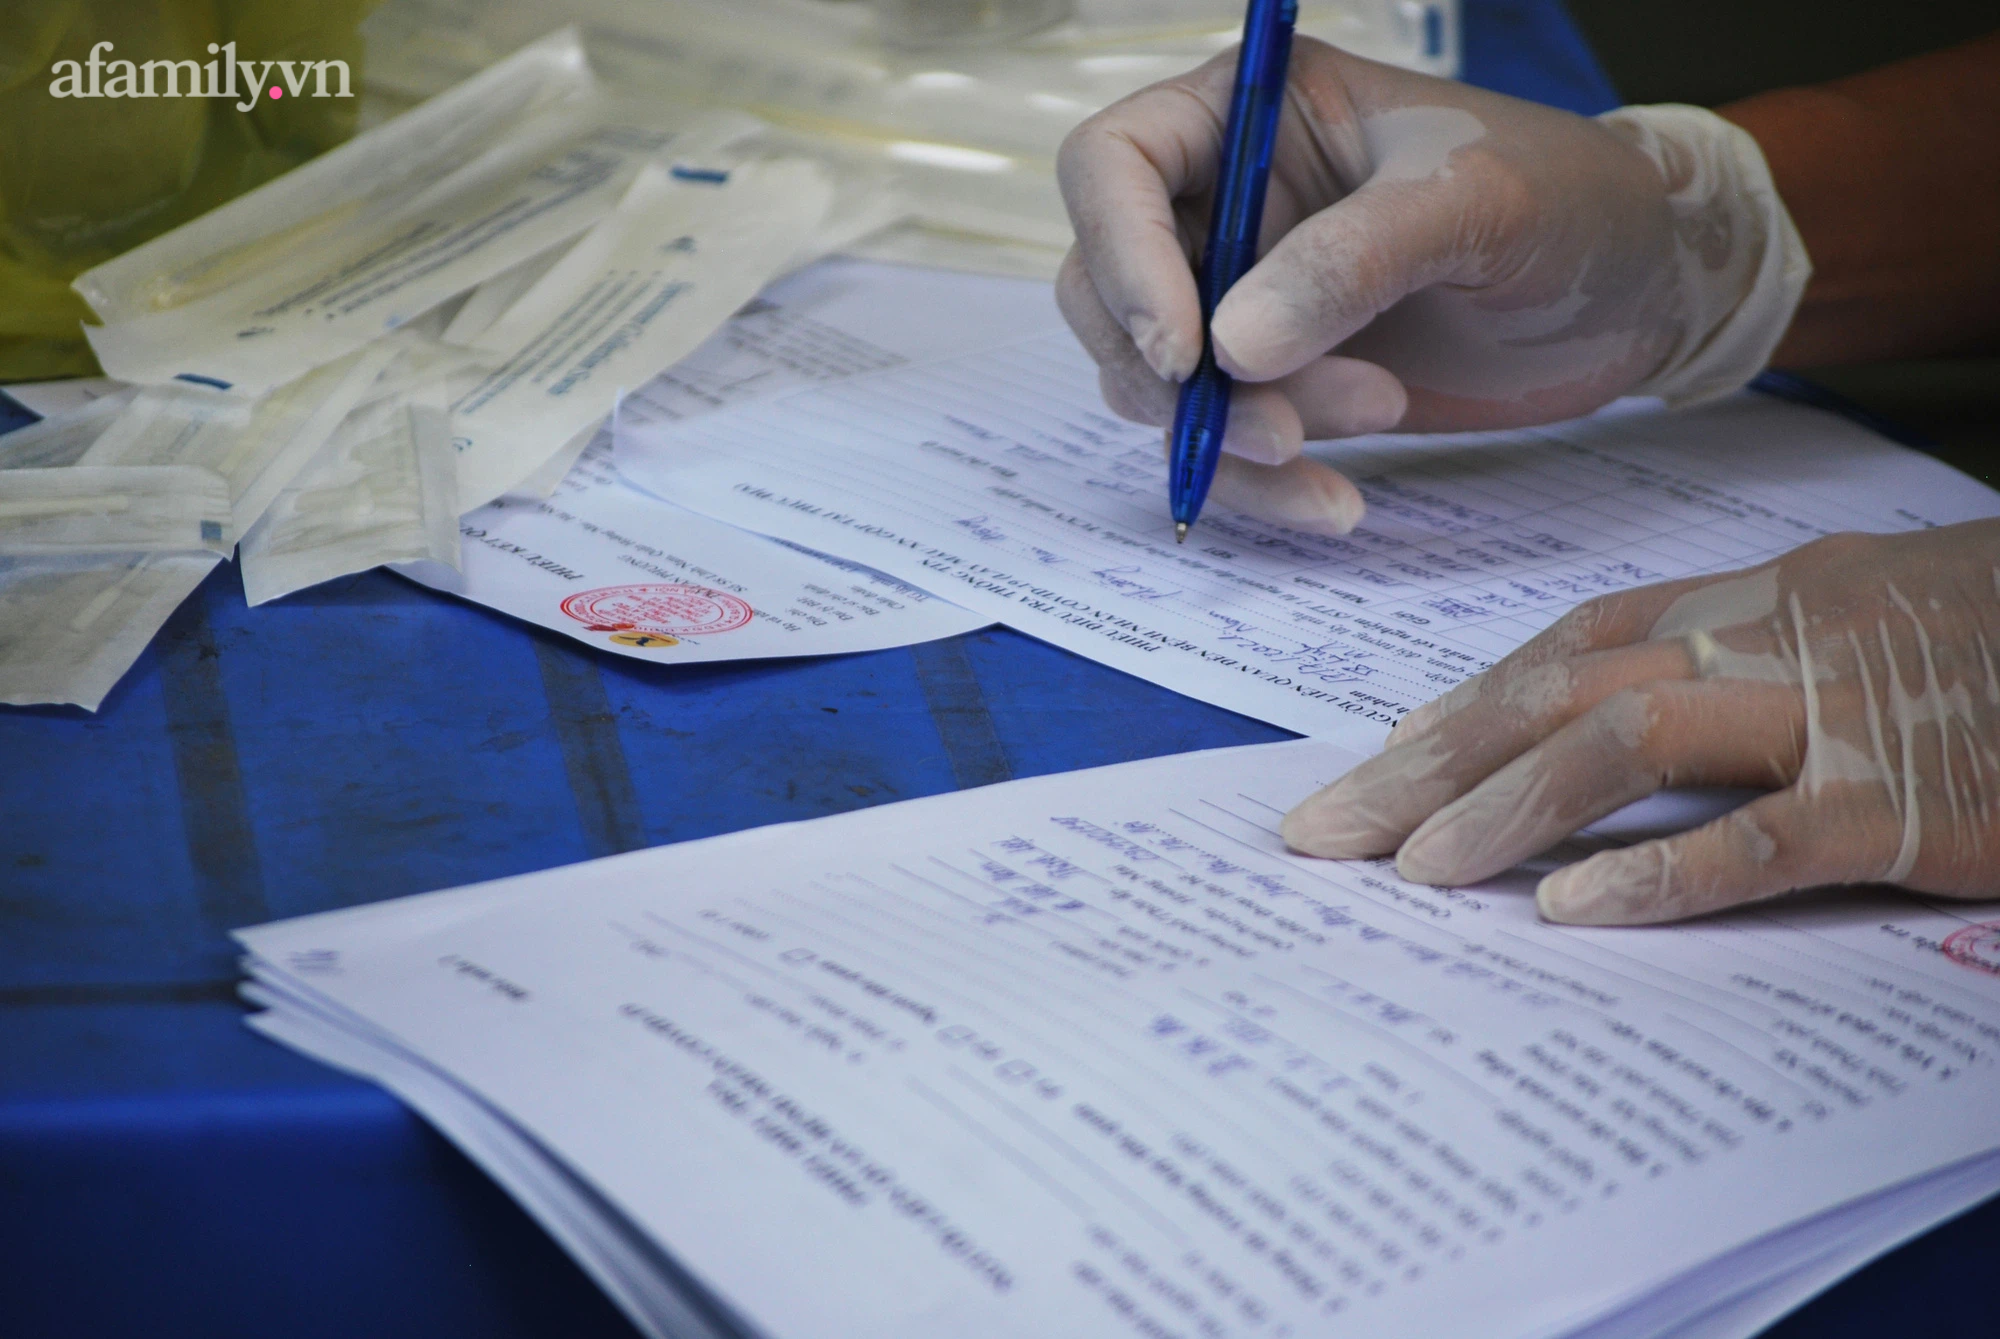 Hà Nội: Phong tỏa, lấy mẫu xét nghiệm người dân xung quanh cửa hàng Vietlott có nhân viên dương tính SARS-CoV-2-7